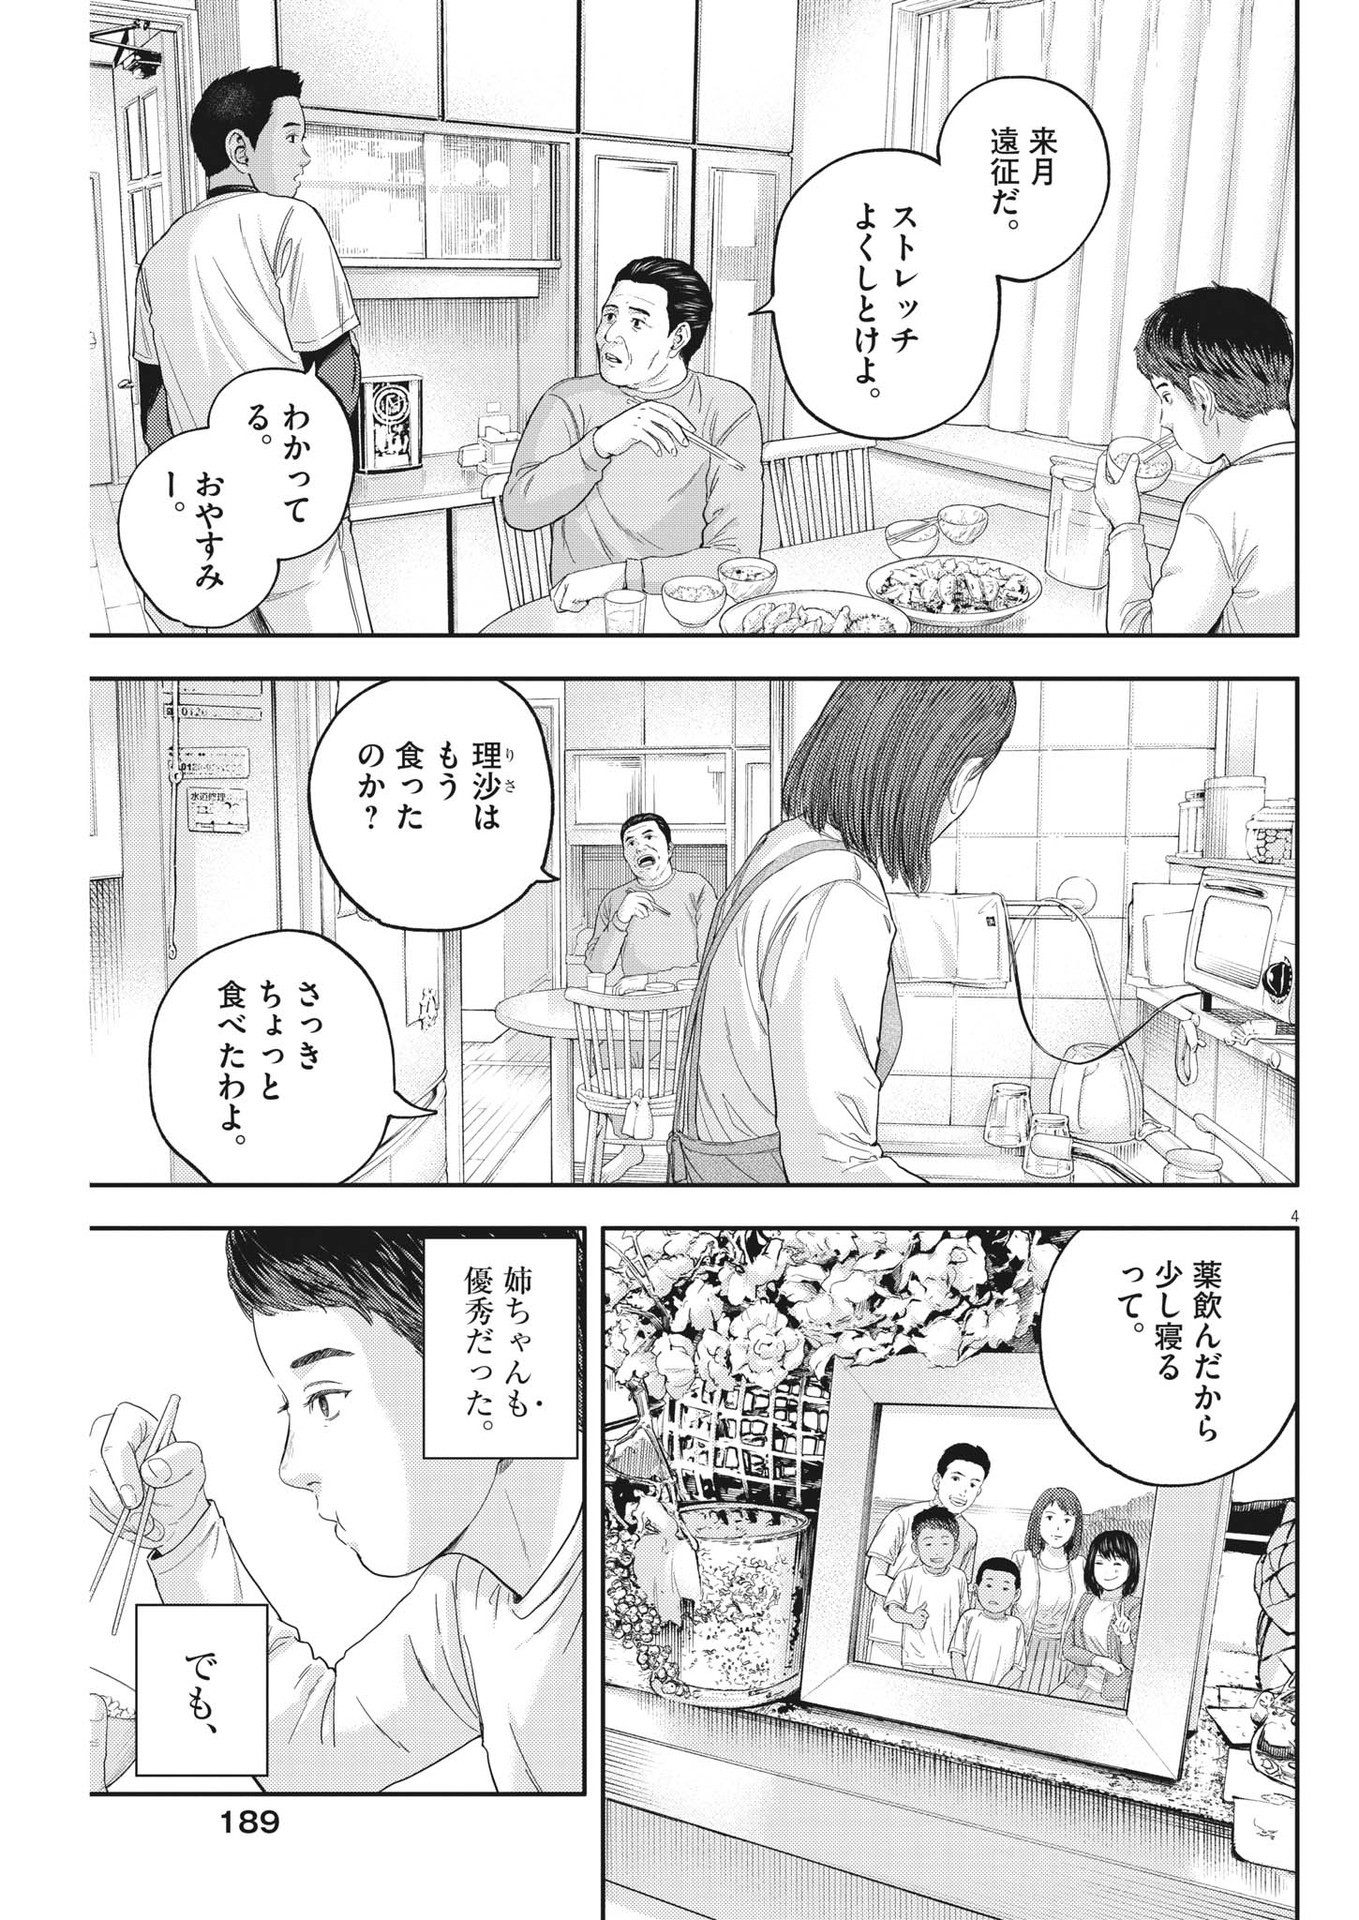 Yumenashi-sensei no Shinroshidou - Chapter 19 - Page 4